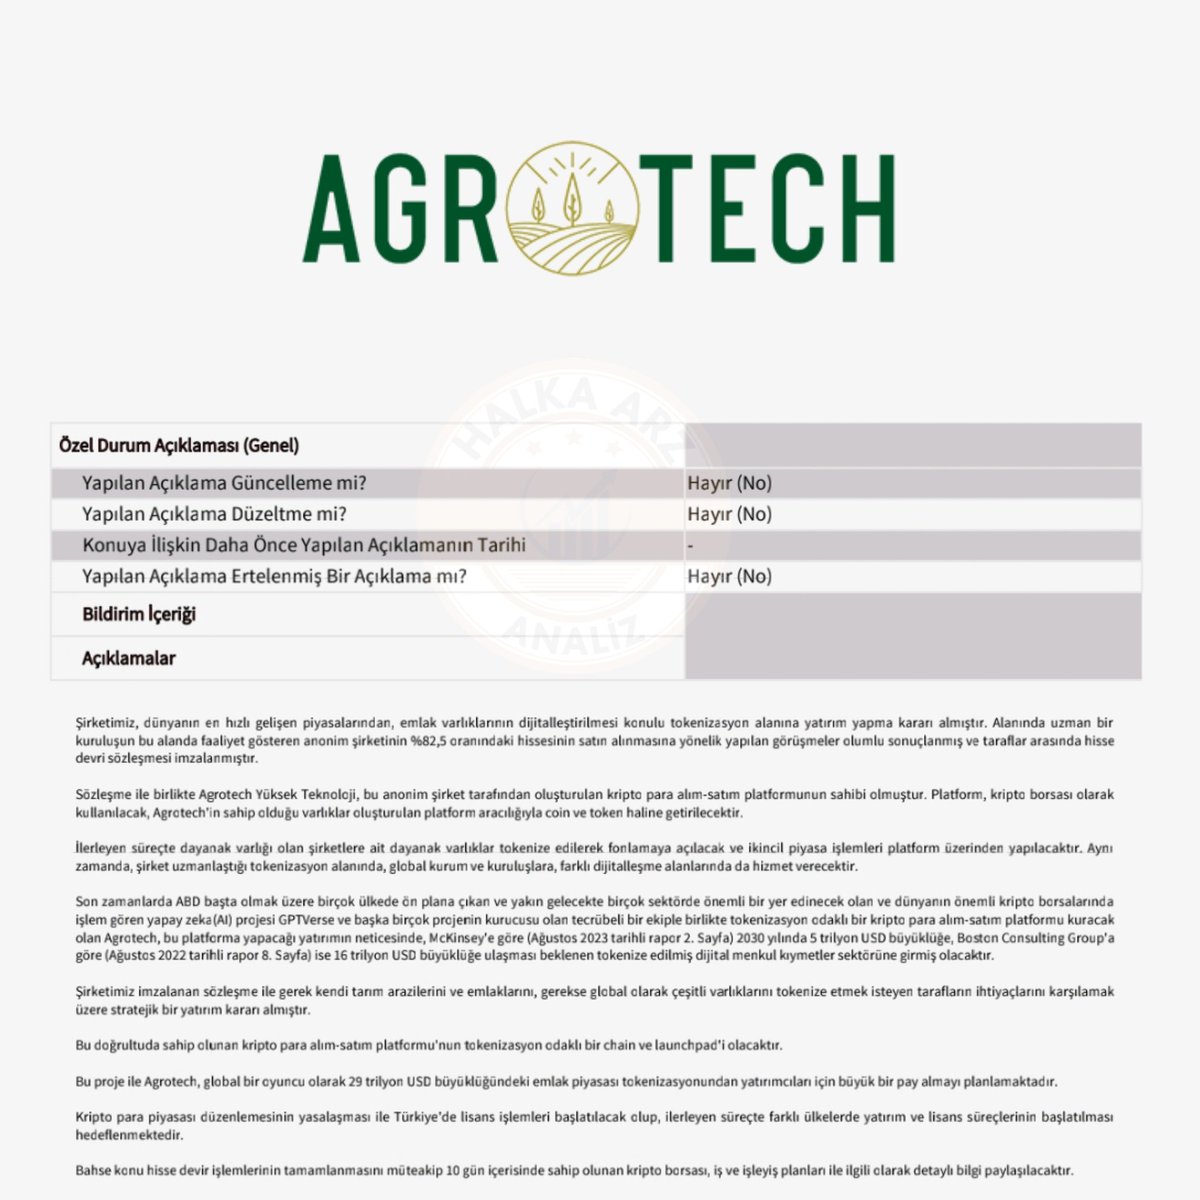 📢 Agrotech Yüksek Teknoloji #AGROT emlak varlıklarının dijitalleştirilmesi konulu tokenizasyon alanına yatırım yapmak için bu alanda faaliyet gösteren bir anonim şirketin %82,5 oranındaki hissesinin satın alınması konusunda anlaşmaya varıldığını, imzalanan hisse devri sözleşmesi…